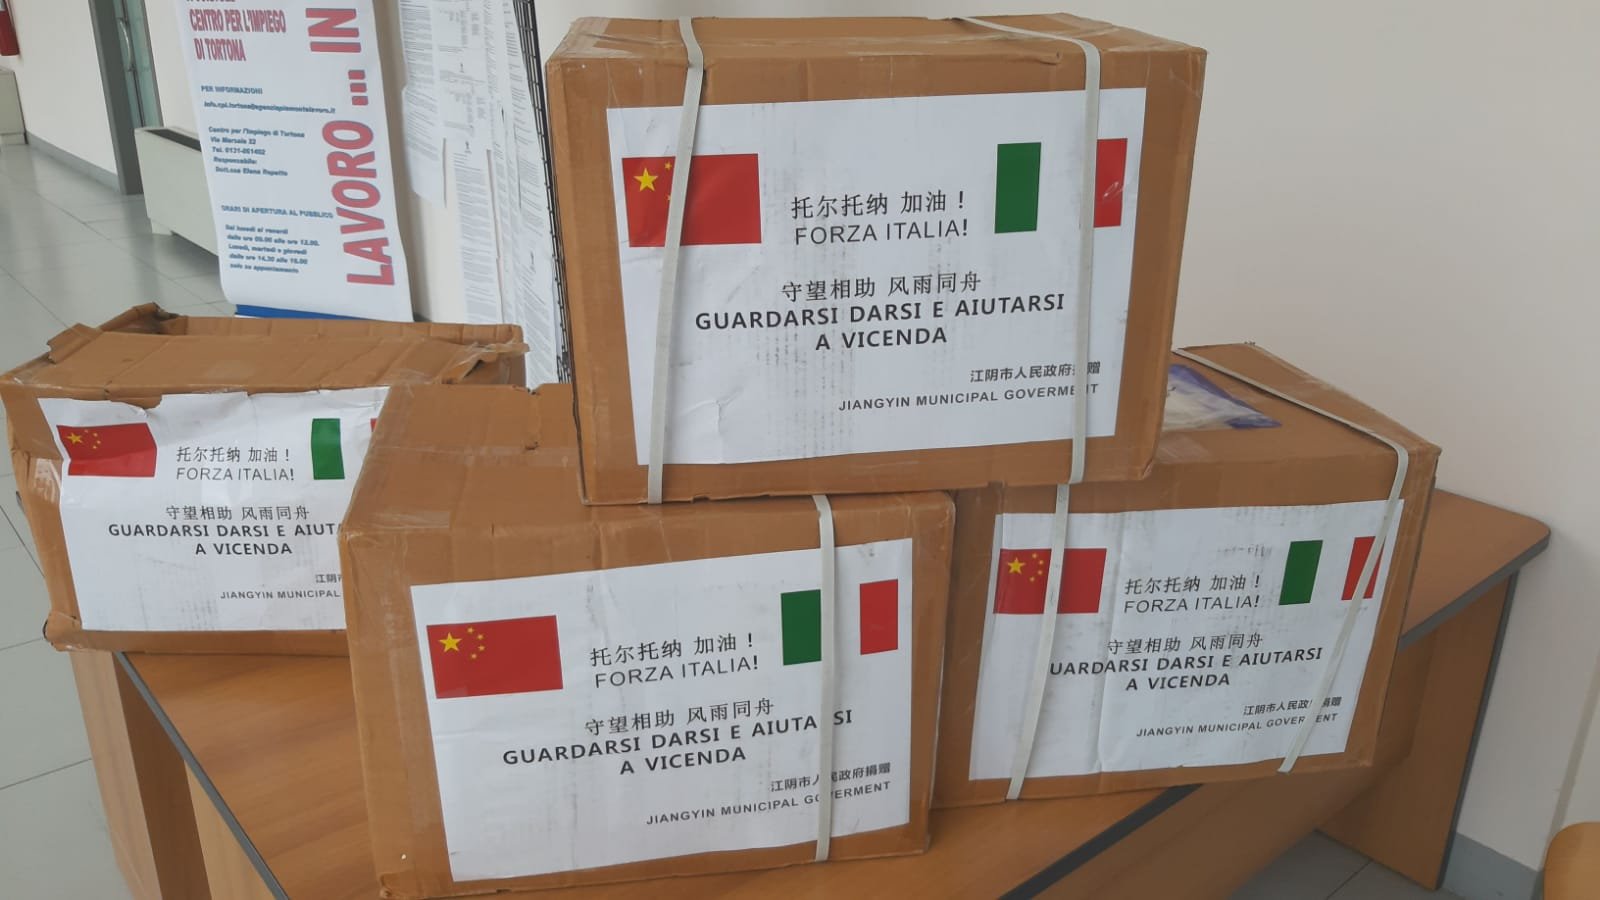 Regione Piemonte e la comunità cinese fanno sempre più squadra per combattere il covid